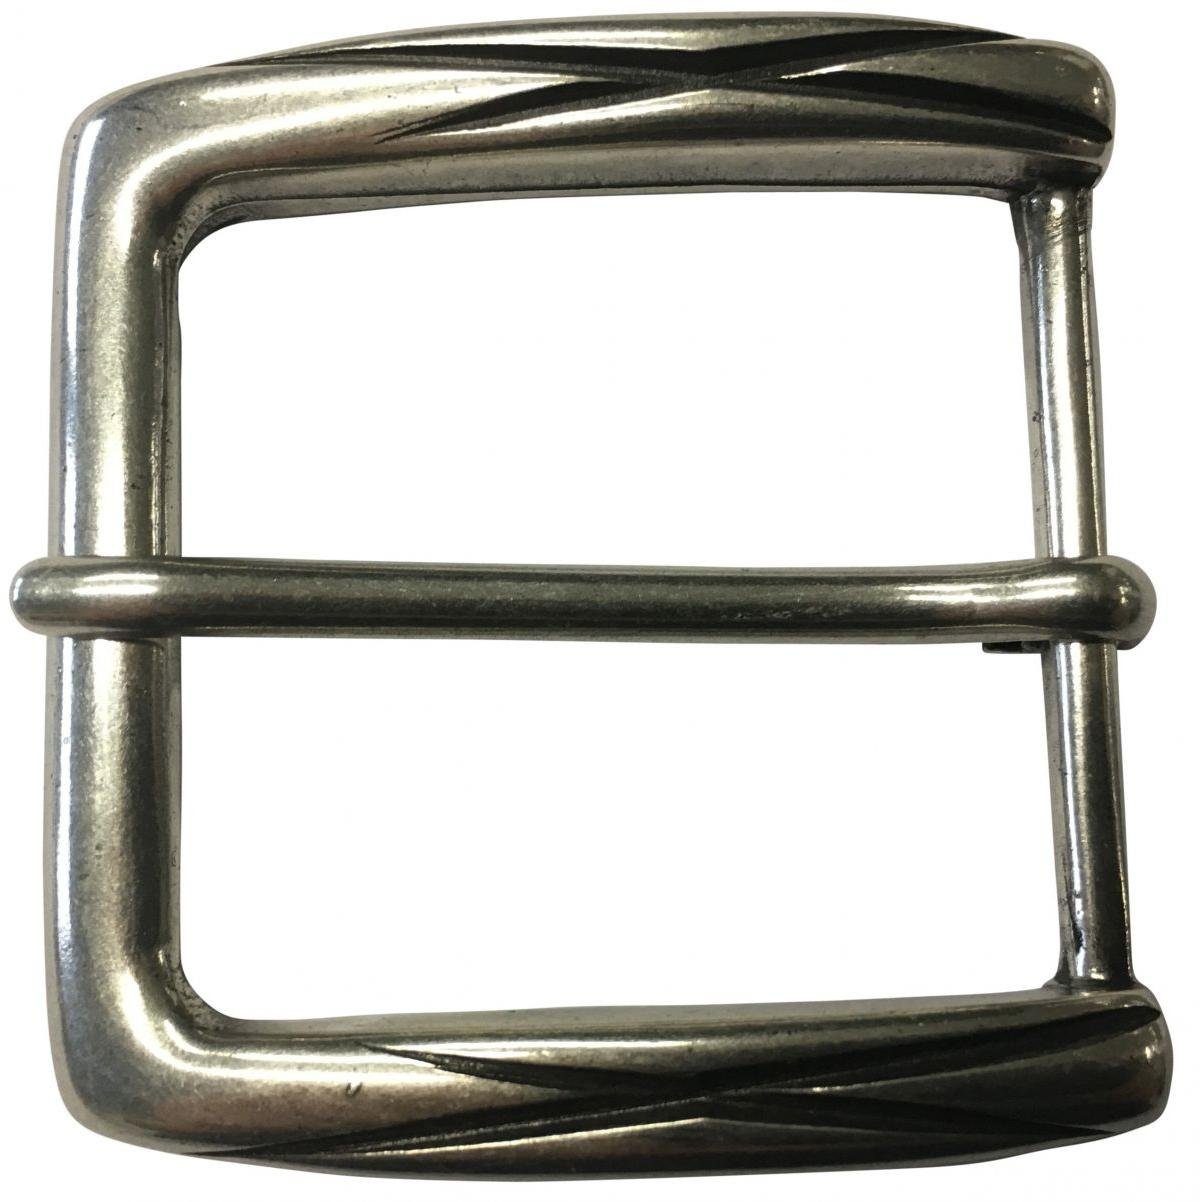 BELTINGER Gürtelschnalle Check 4,0 cm - Gürtelschließe 40mm - Dorn-Schließe - Gürtel bis 4cm | Gürtelschnallen